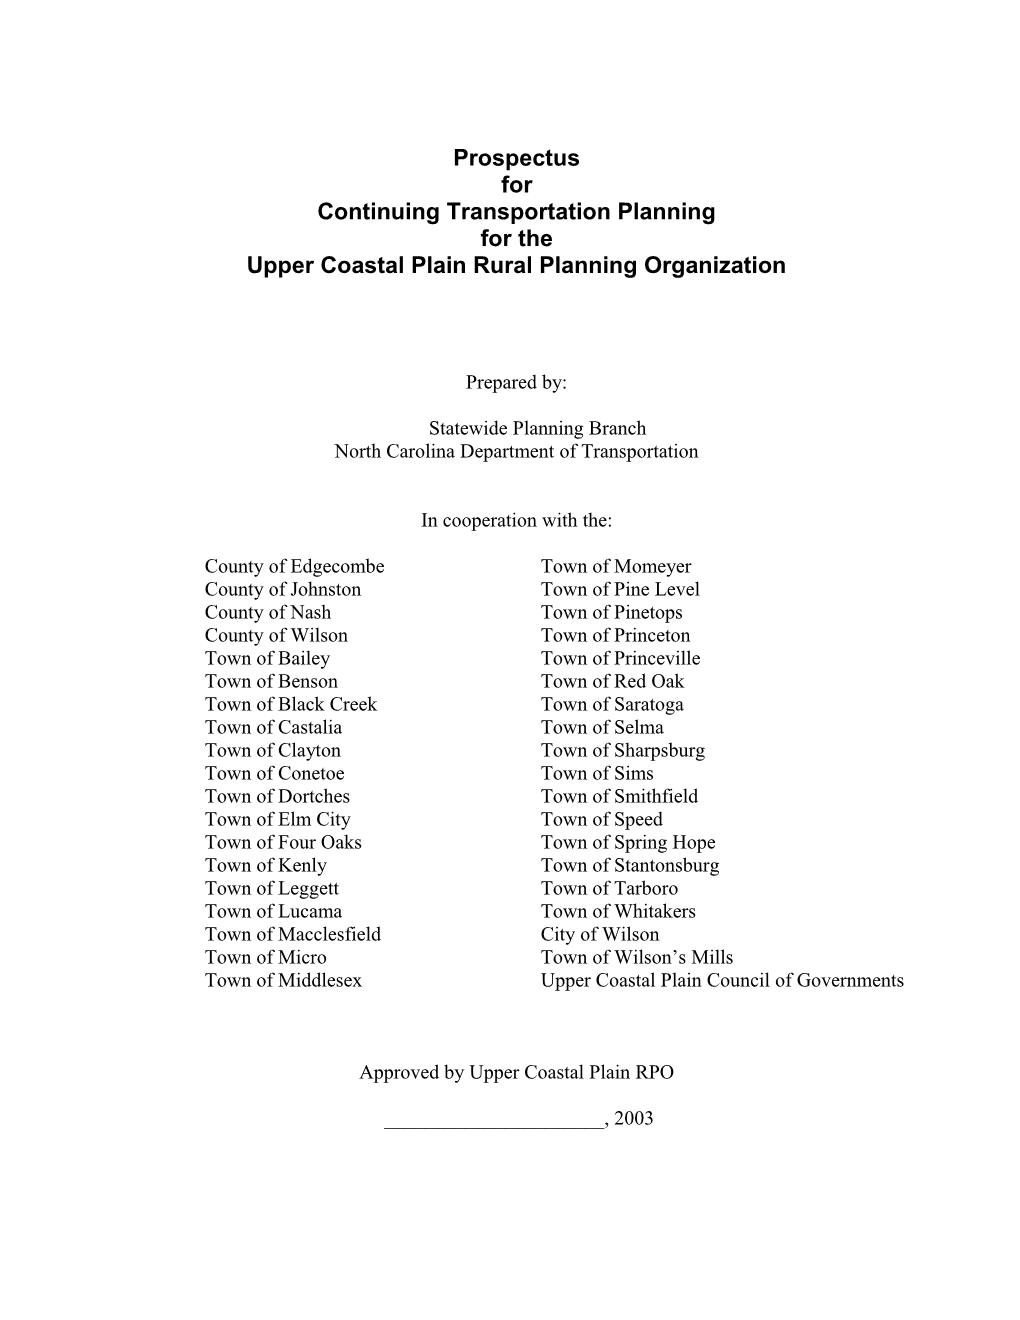 Upper Coastal Plain Rural Planning Organization